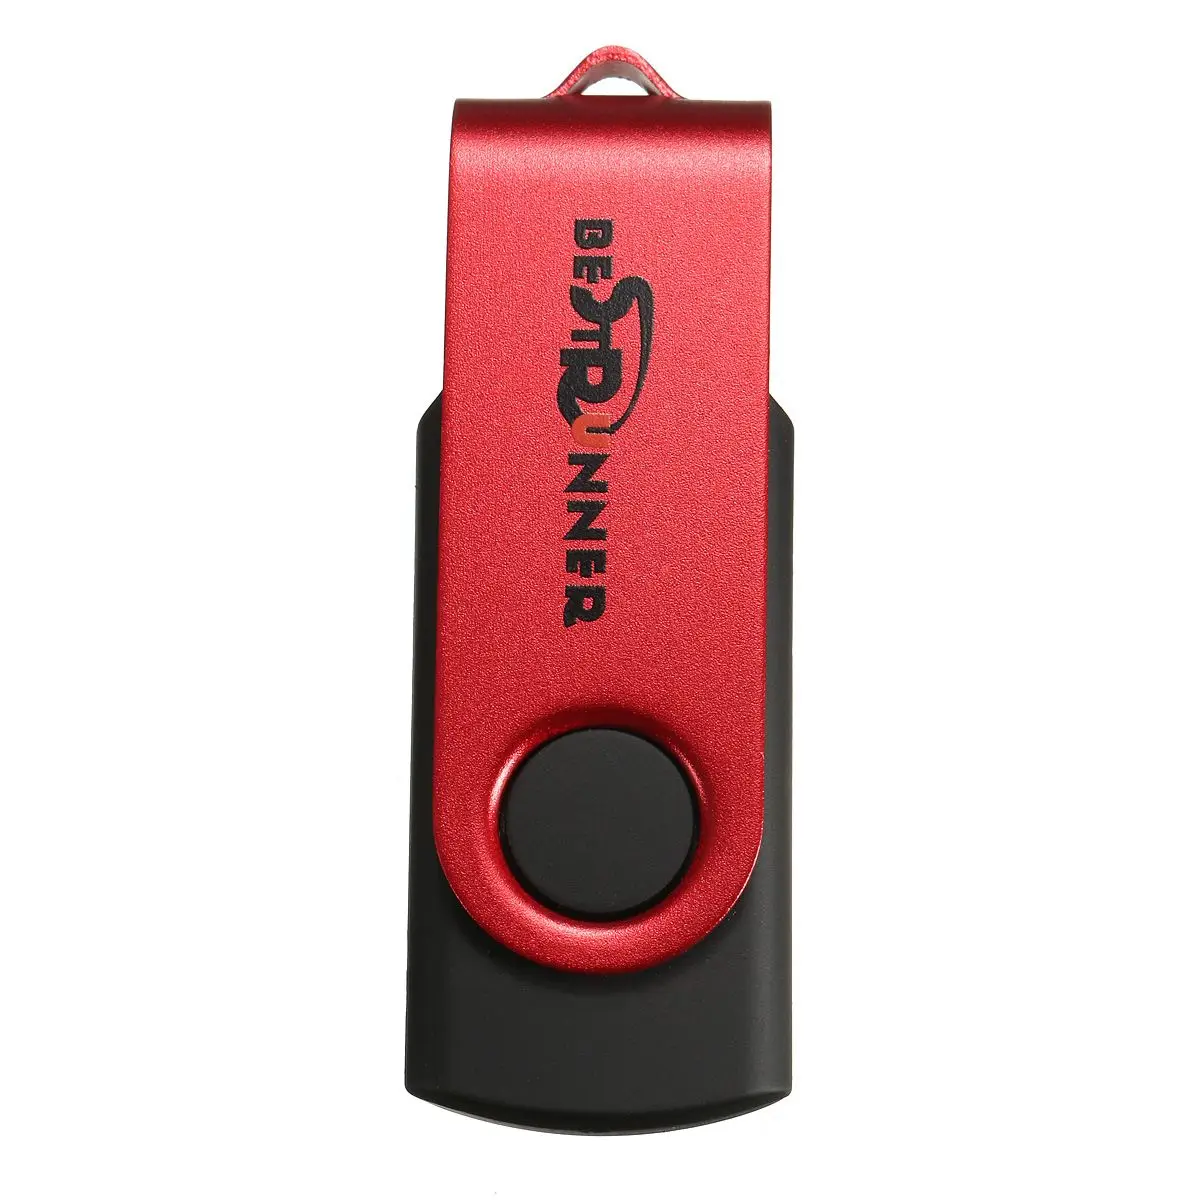 1 ГБ флеш-накопитель Флешка флеш-диск USB 2,0 карта памяти USB диск для хранения большого пальца U палка для компьютера ноутбука ПК